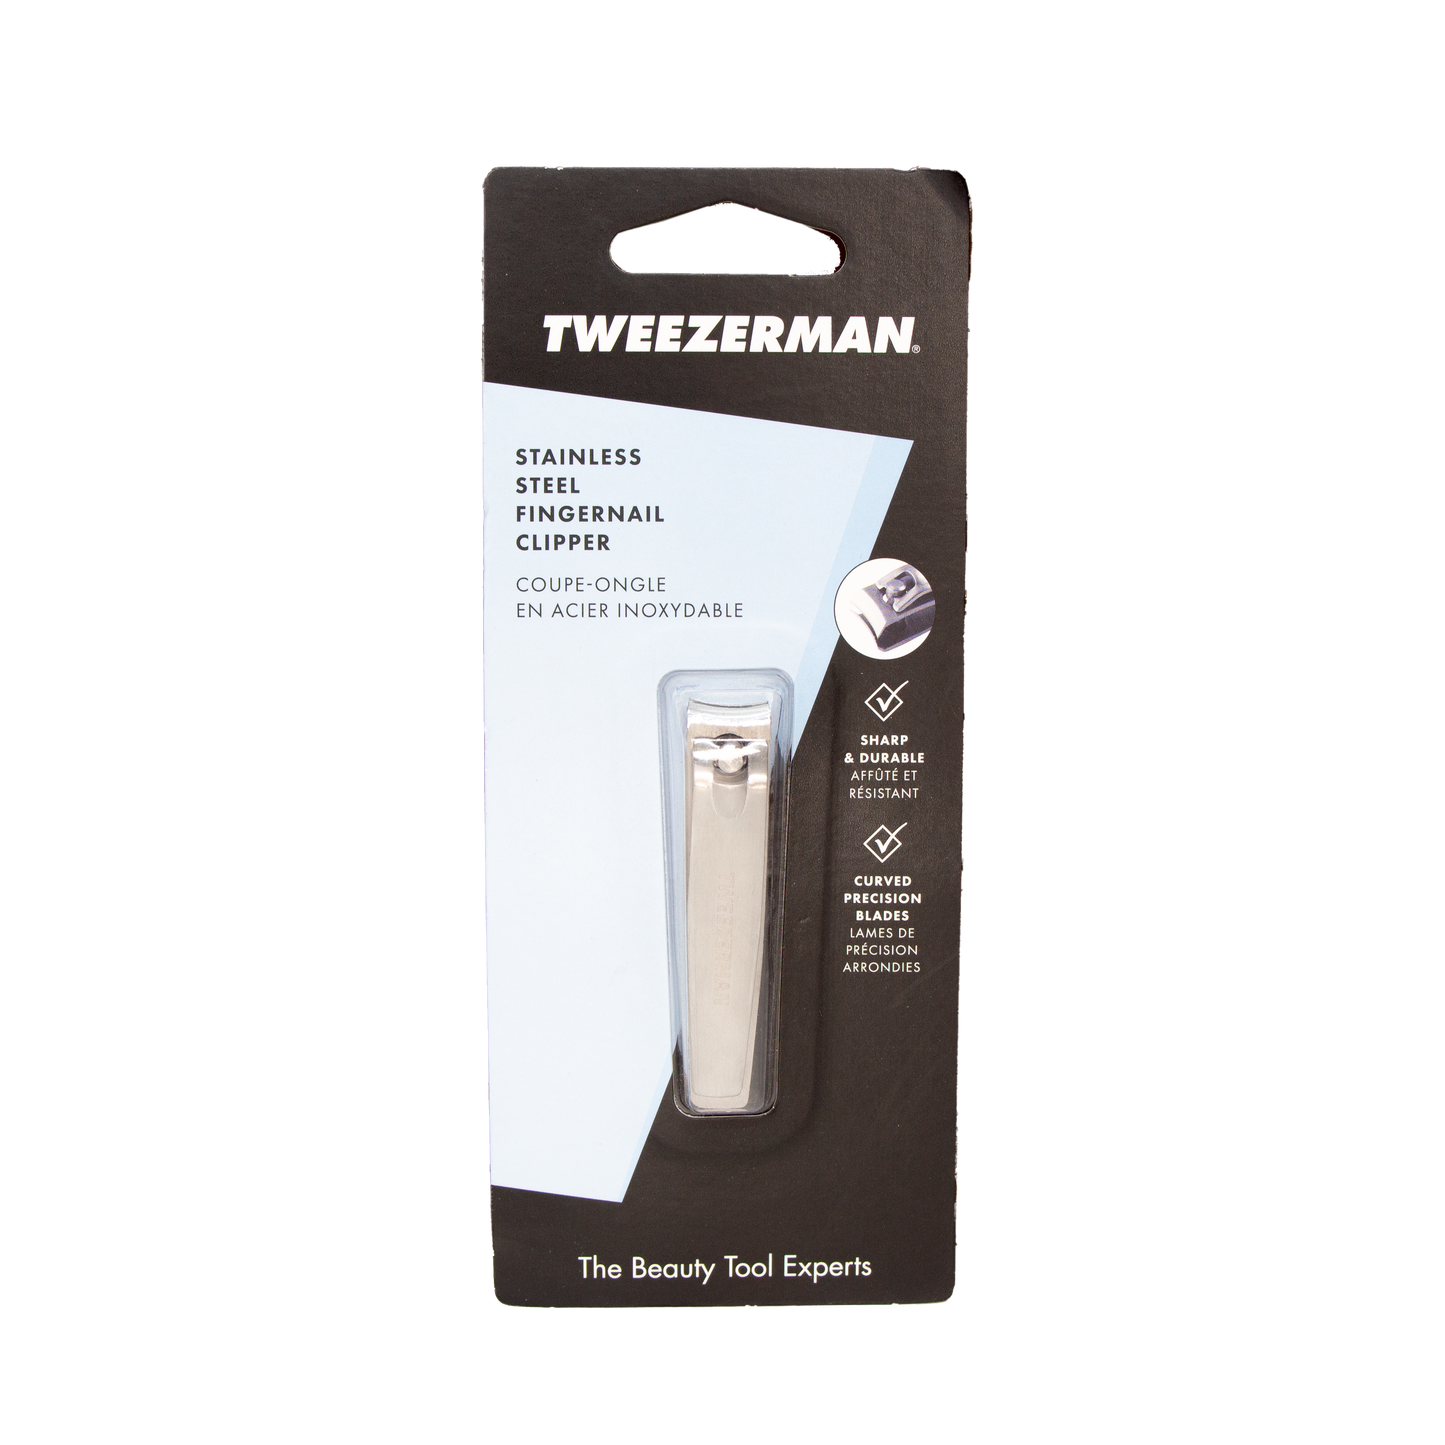 Tweezerman - Stainless Steel Fingernail Clipper